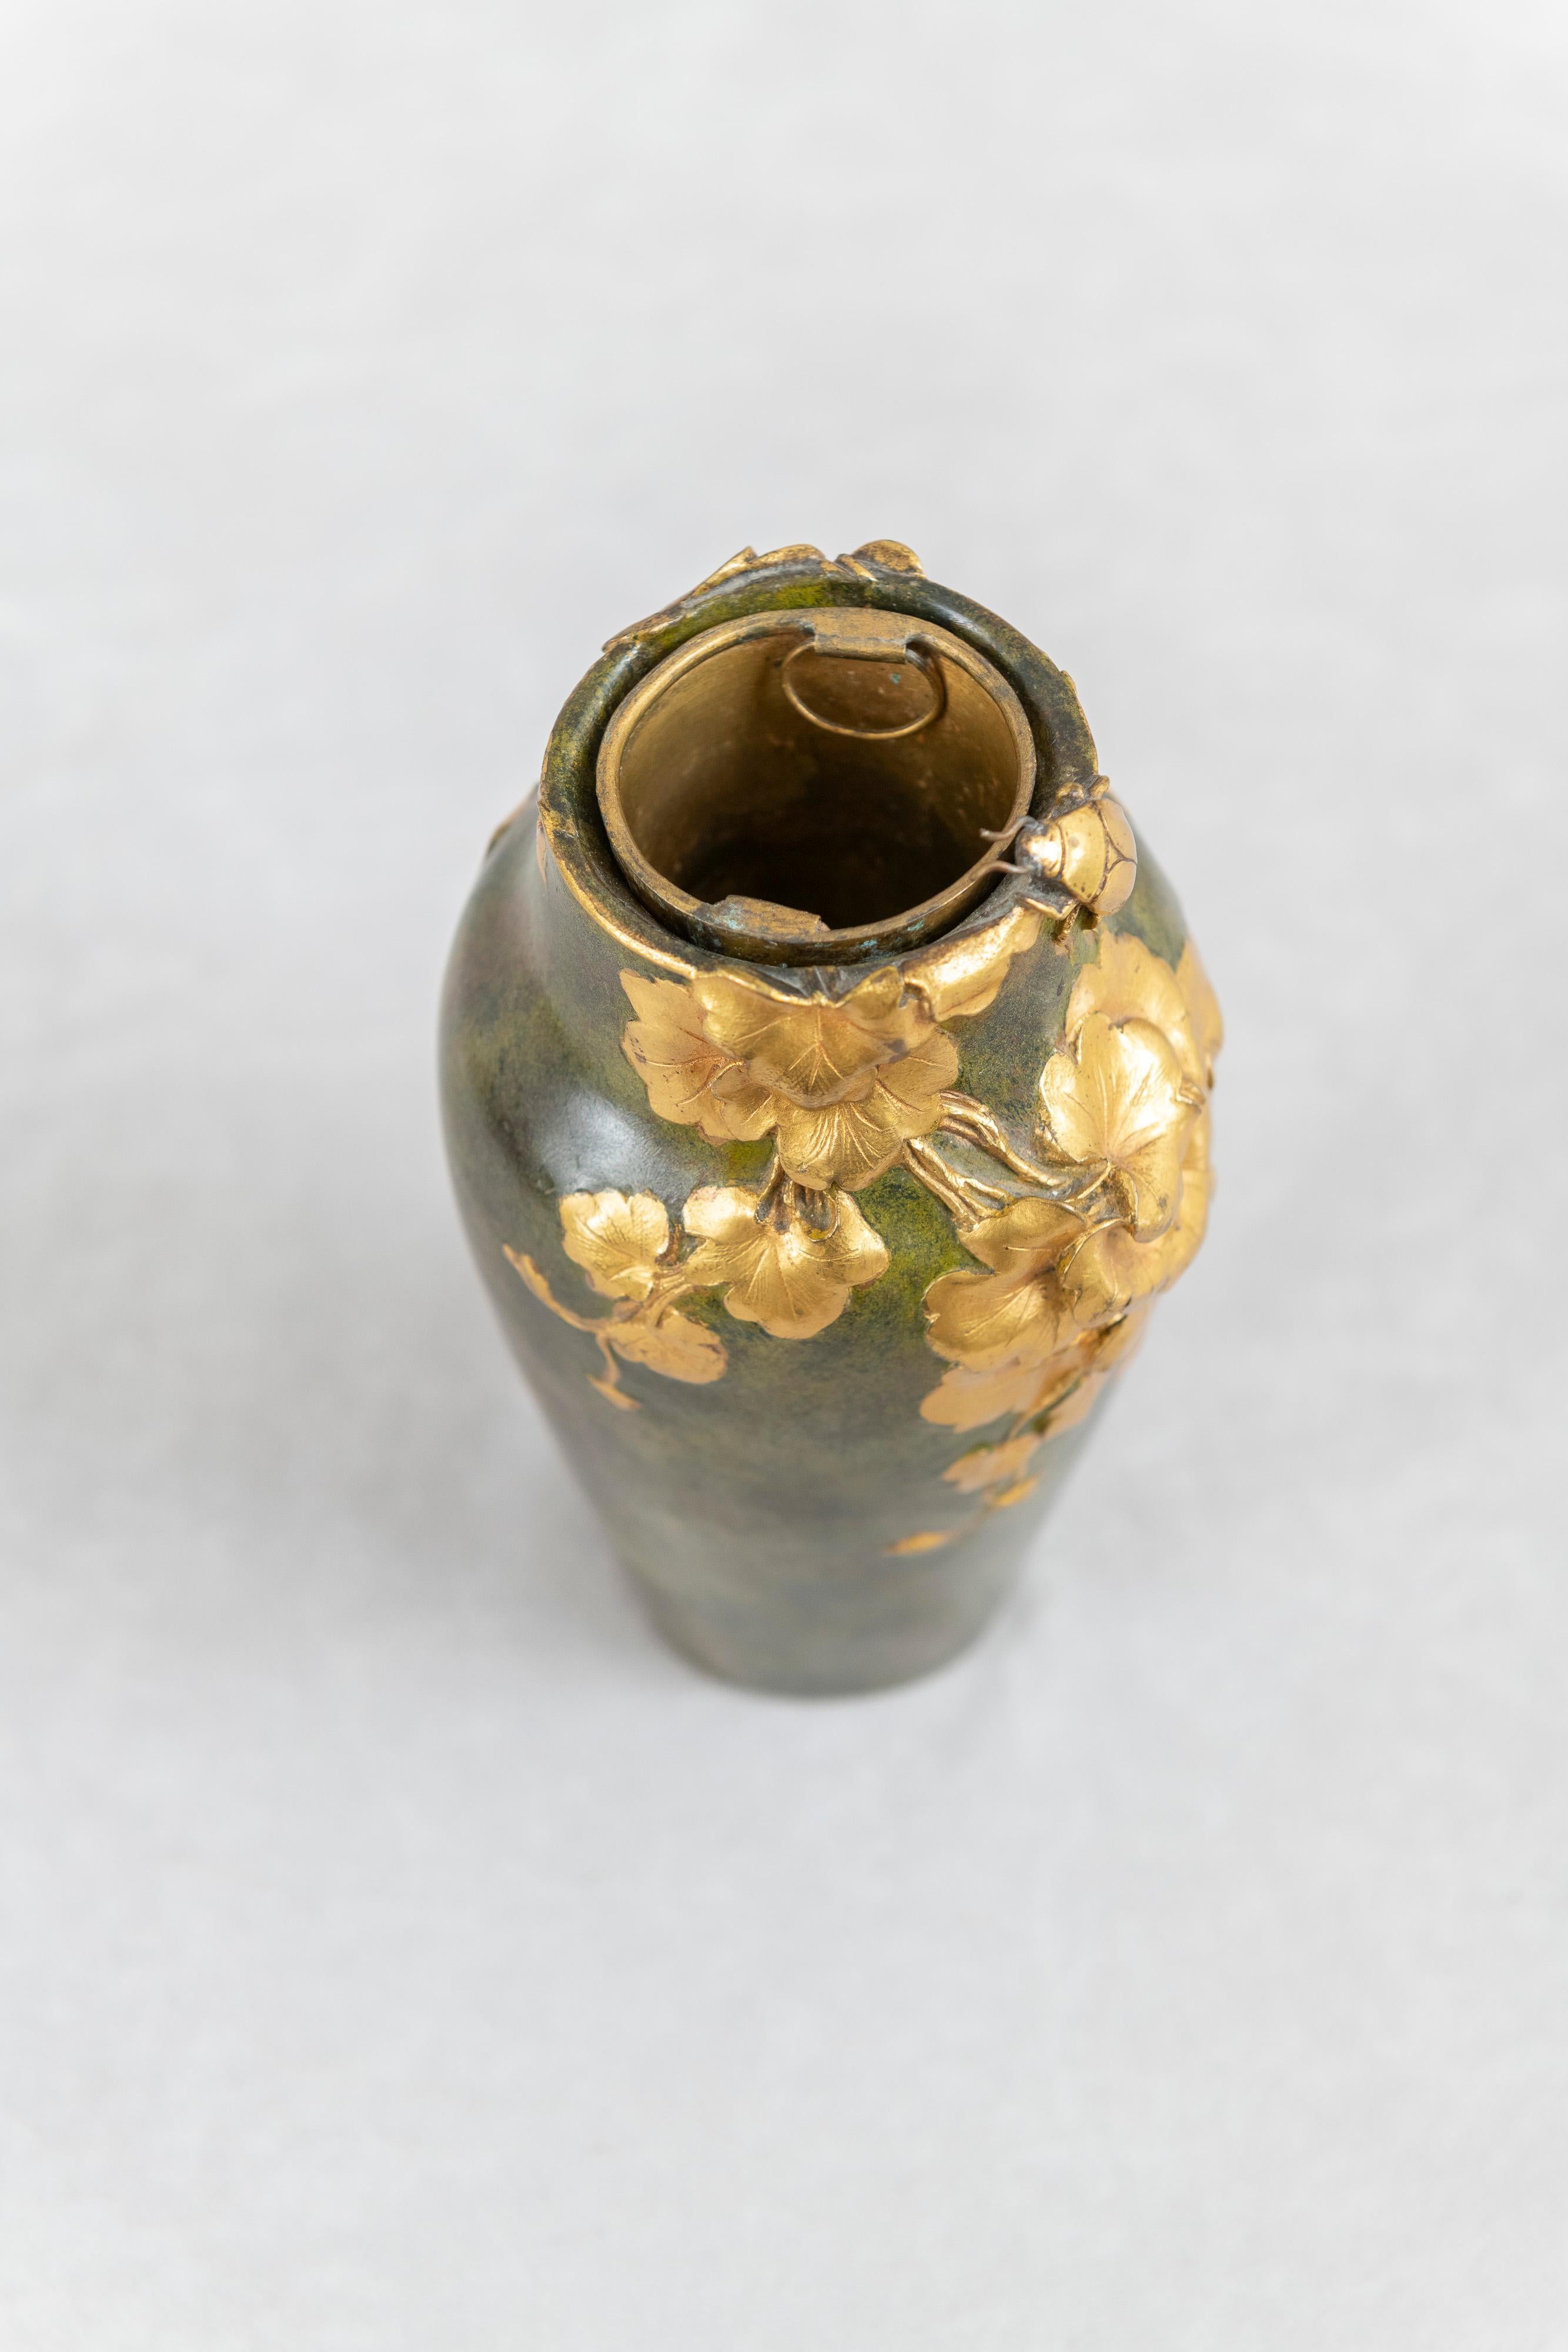 Antique Art Nouveau Gilt and Patinated Bronze Vase, Artist Signed 1